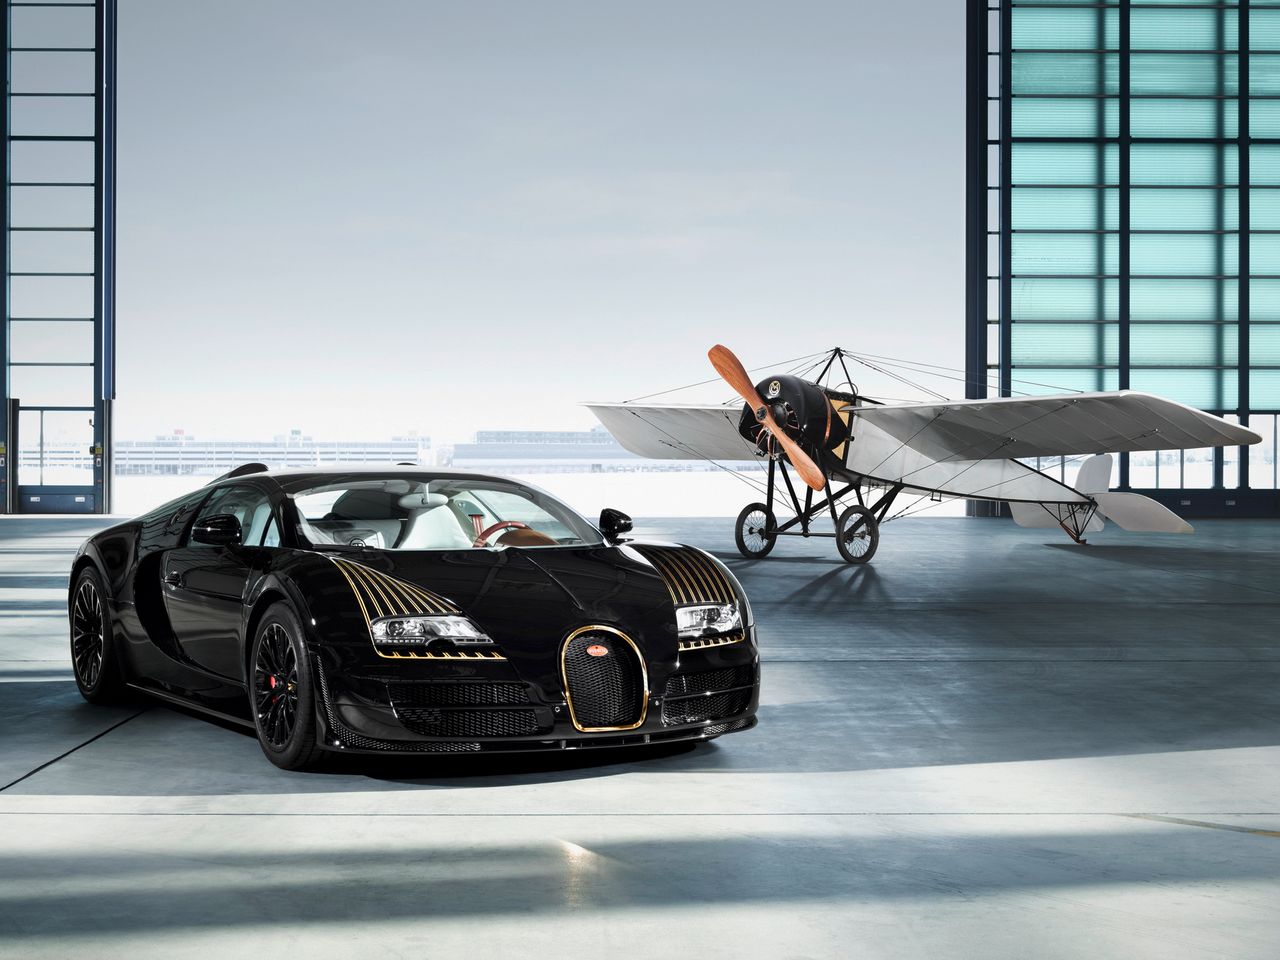 W okresie 2013-2014 Bugatti przygotował kilka specjalnych samochodów z serii Les Légendes de Bugatti. Uczciły one pamięć legend najważniejszych w historii marki.